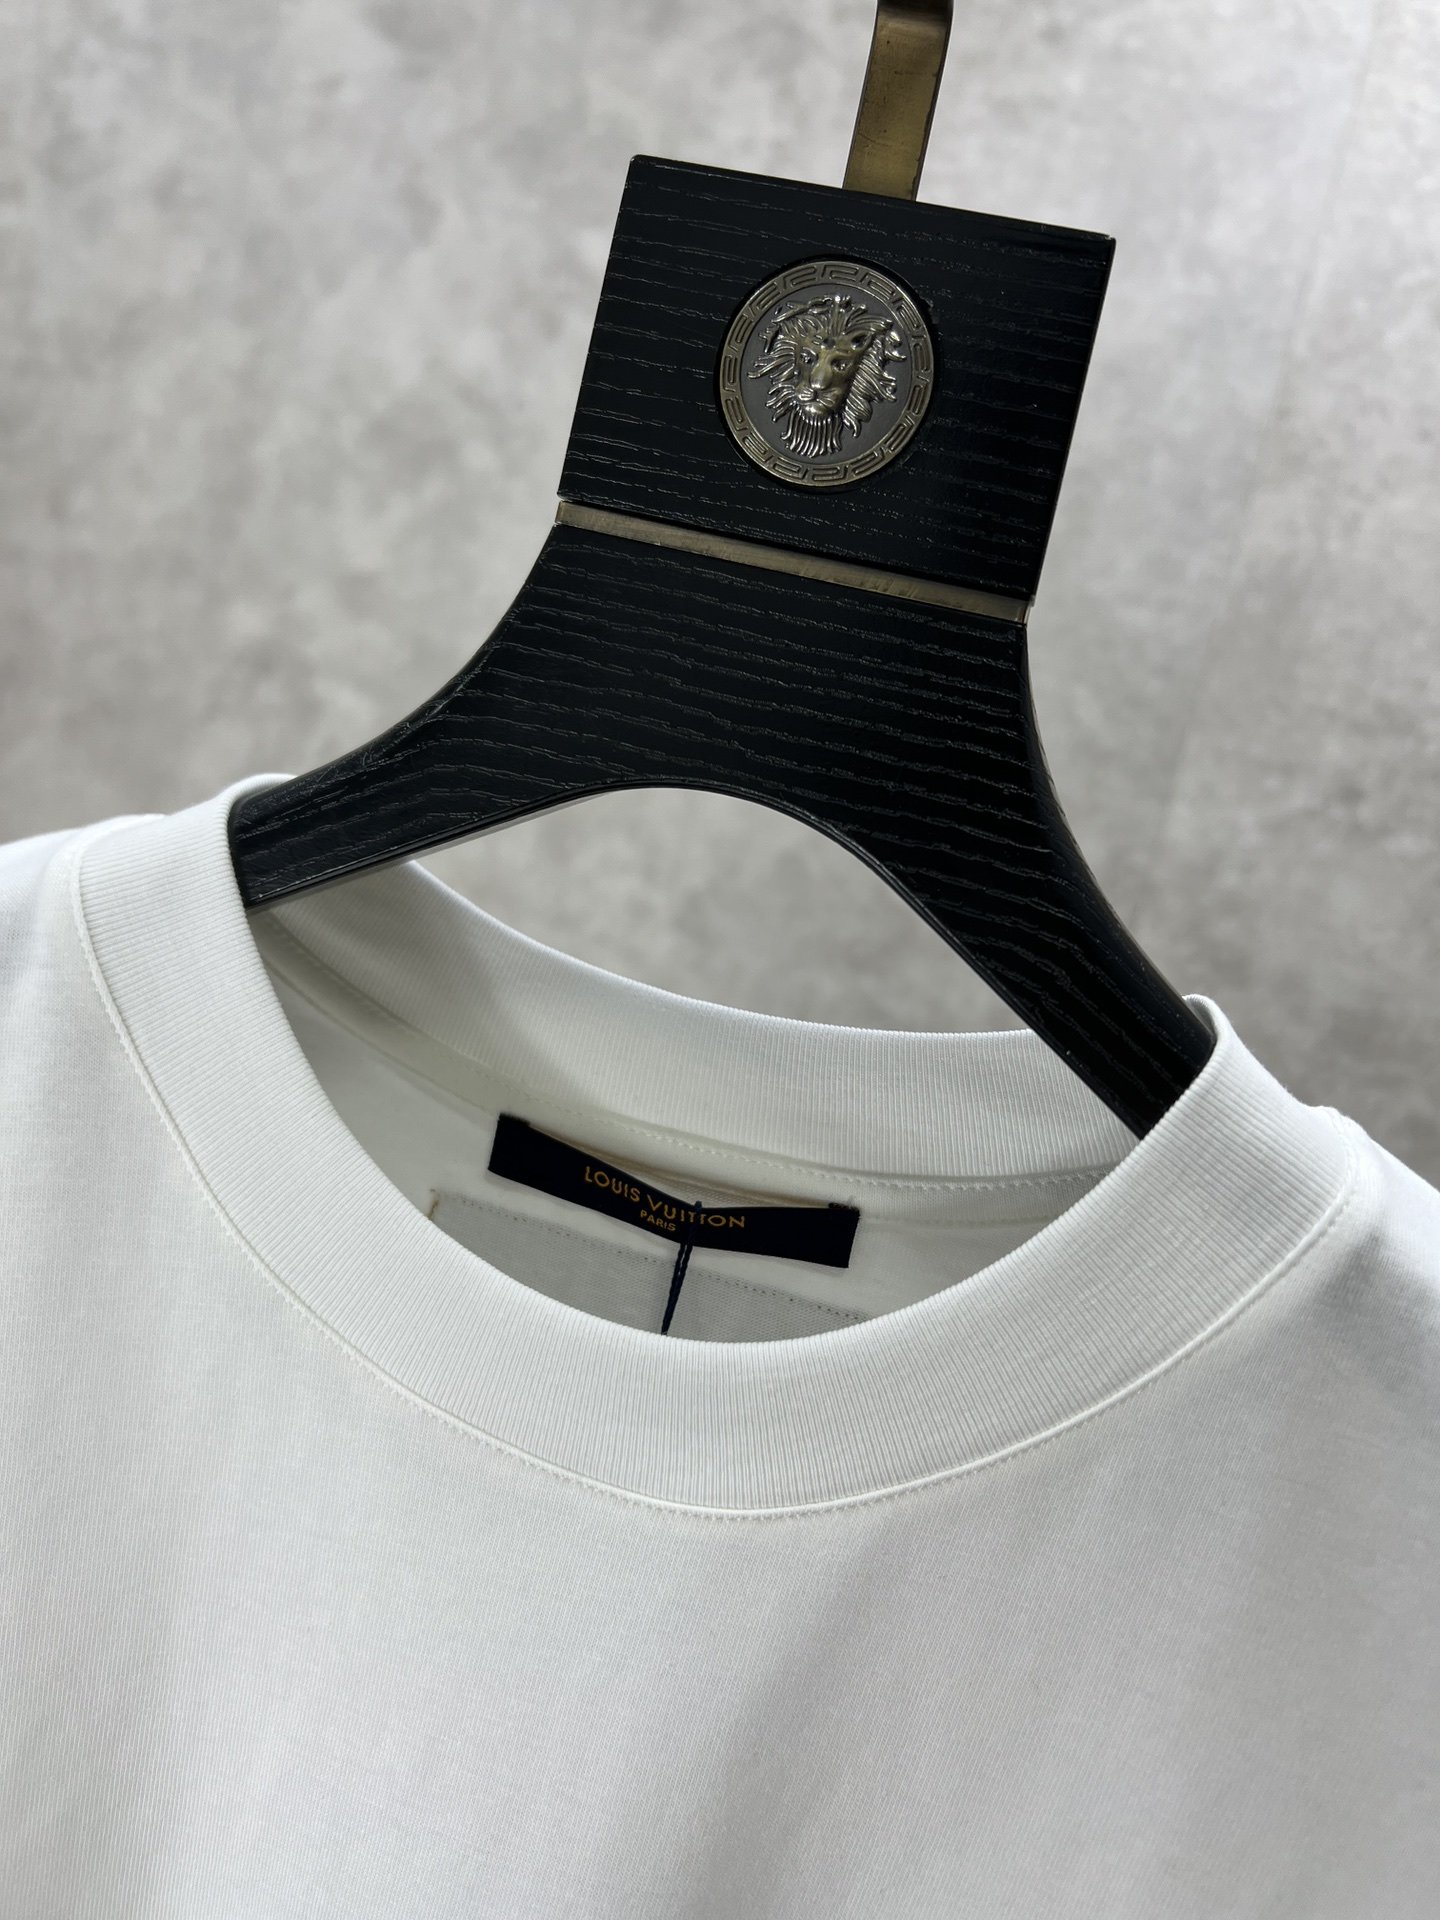 v2024Ss最新款短袖T恤原标定制面料手感柔软穿着舒适做工精细.上身效果无敌帅气L码数S-2xl